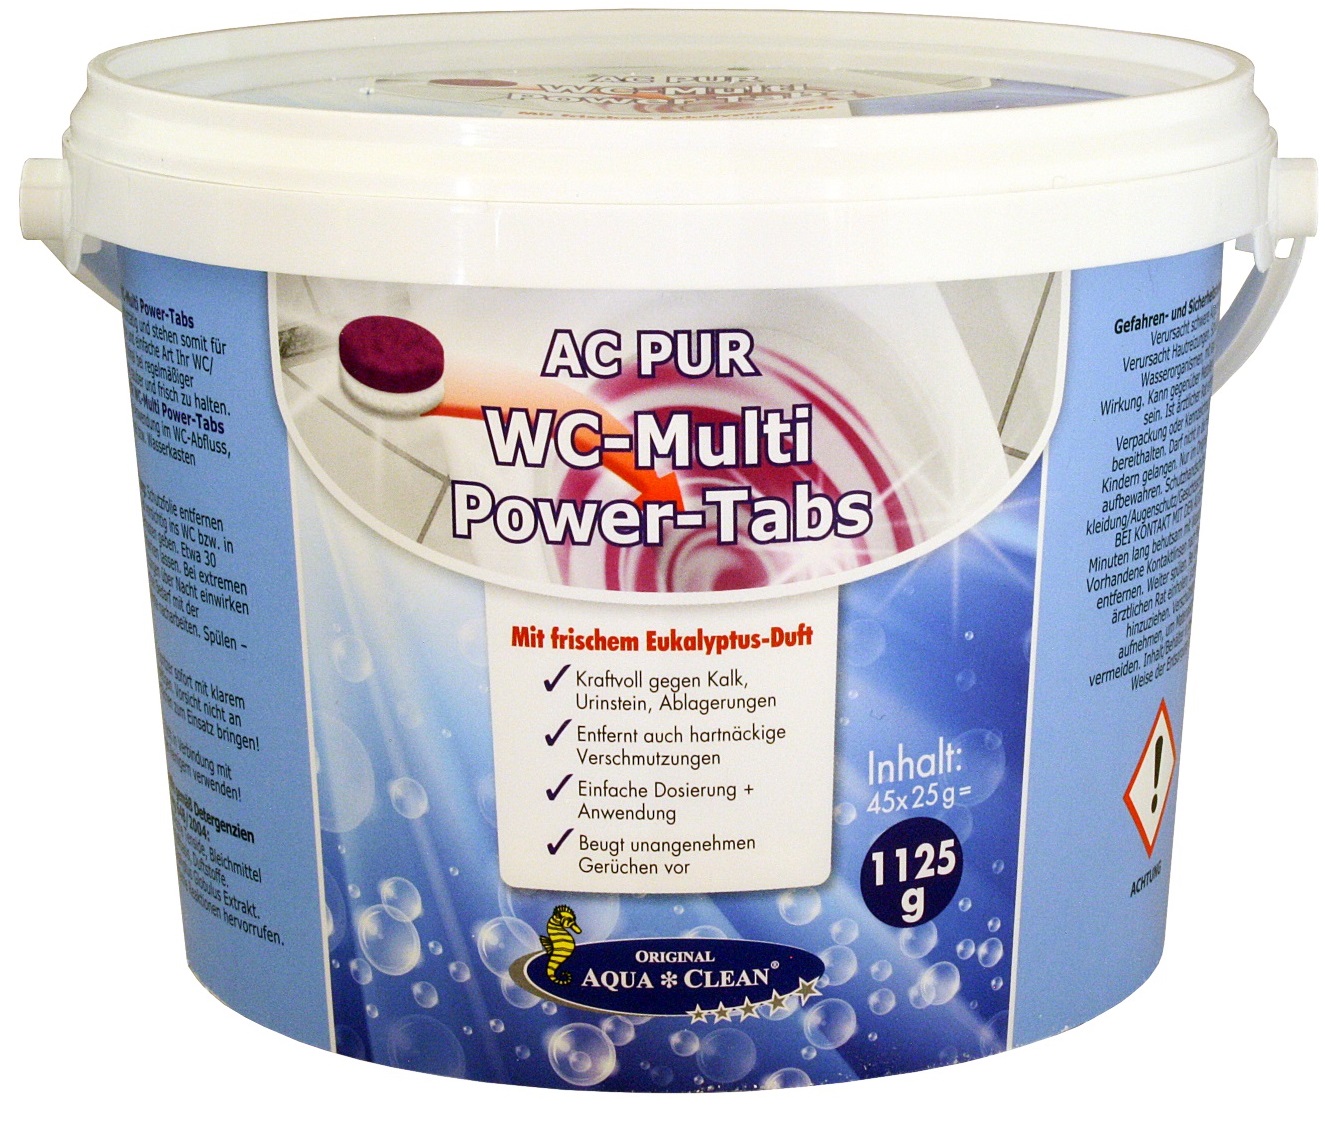 AQUA CLEAN PUR WC-Multi Power-Tabs 1,125g ( 45St. )